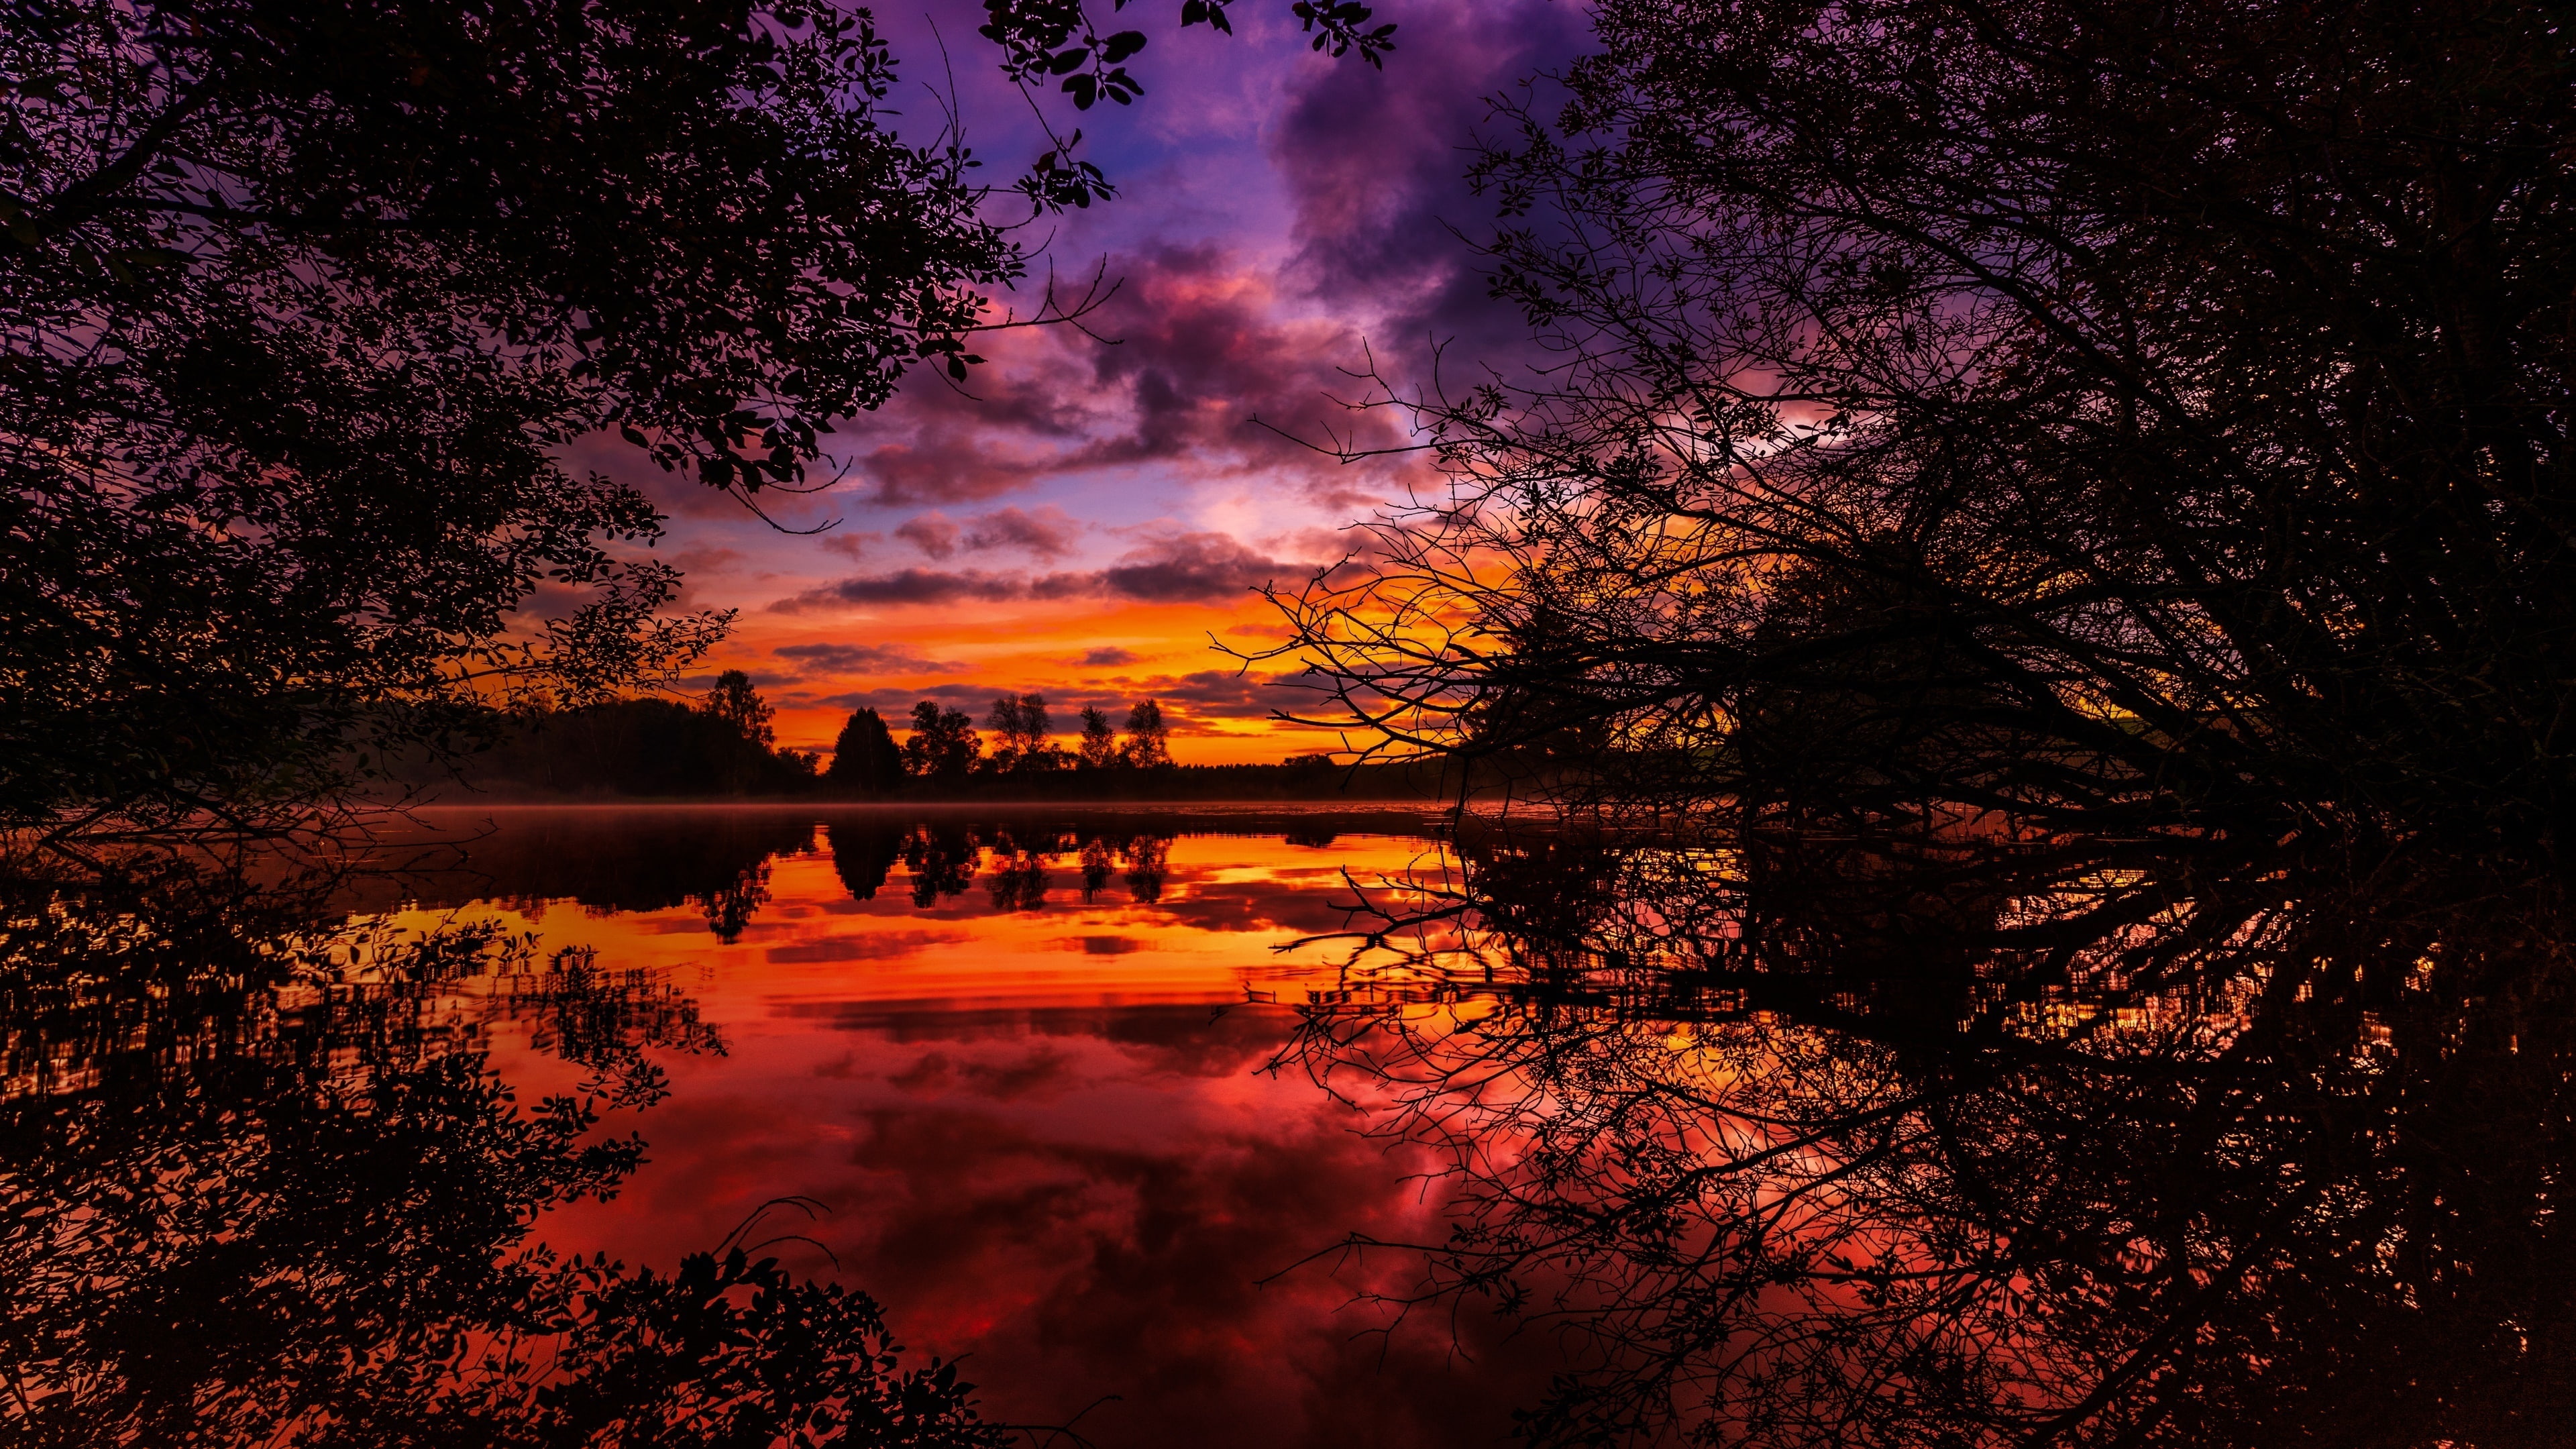 reflection, dusk, sunset, lake, orange sky, scenic, evening